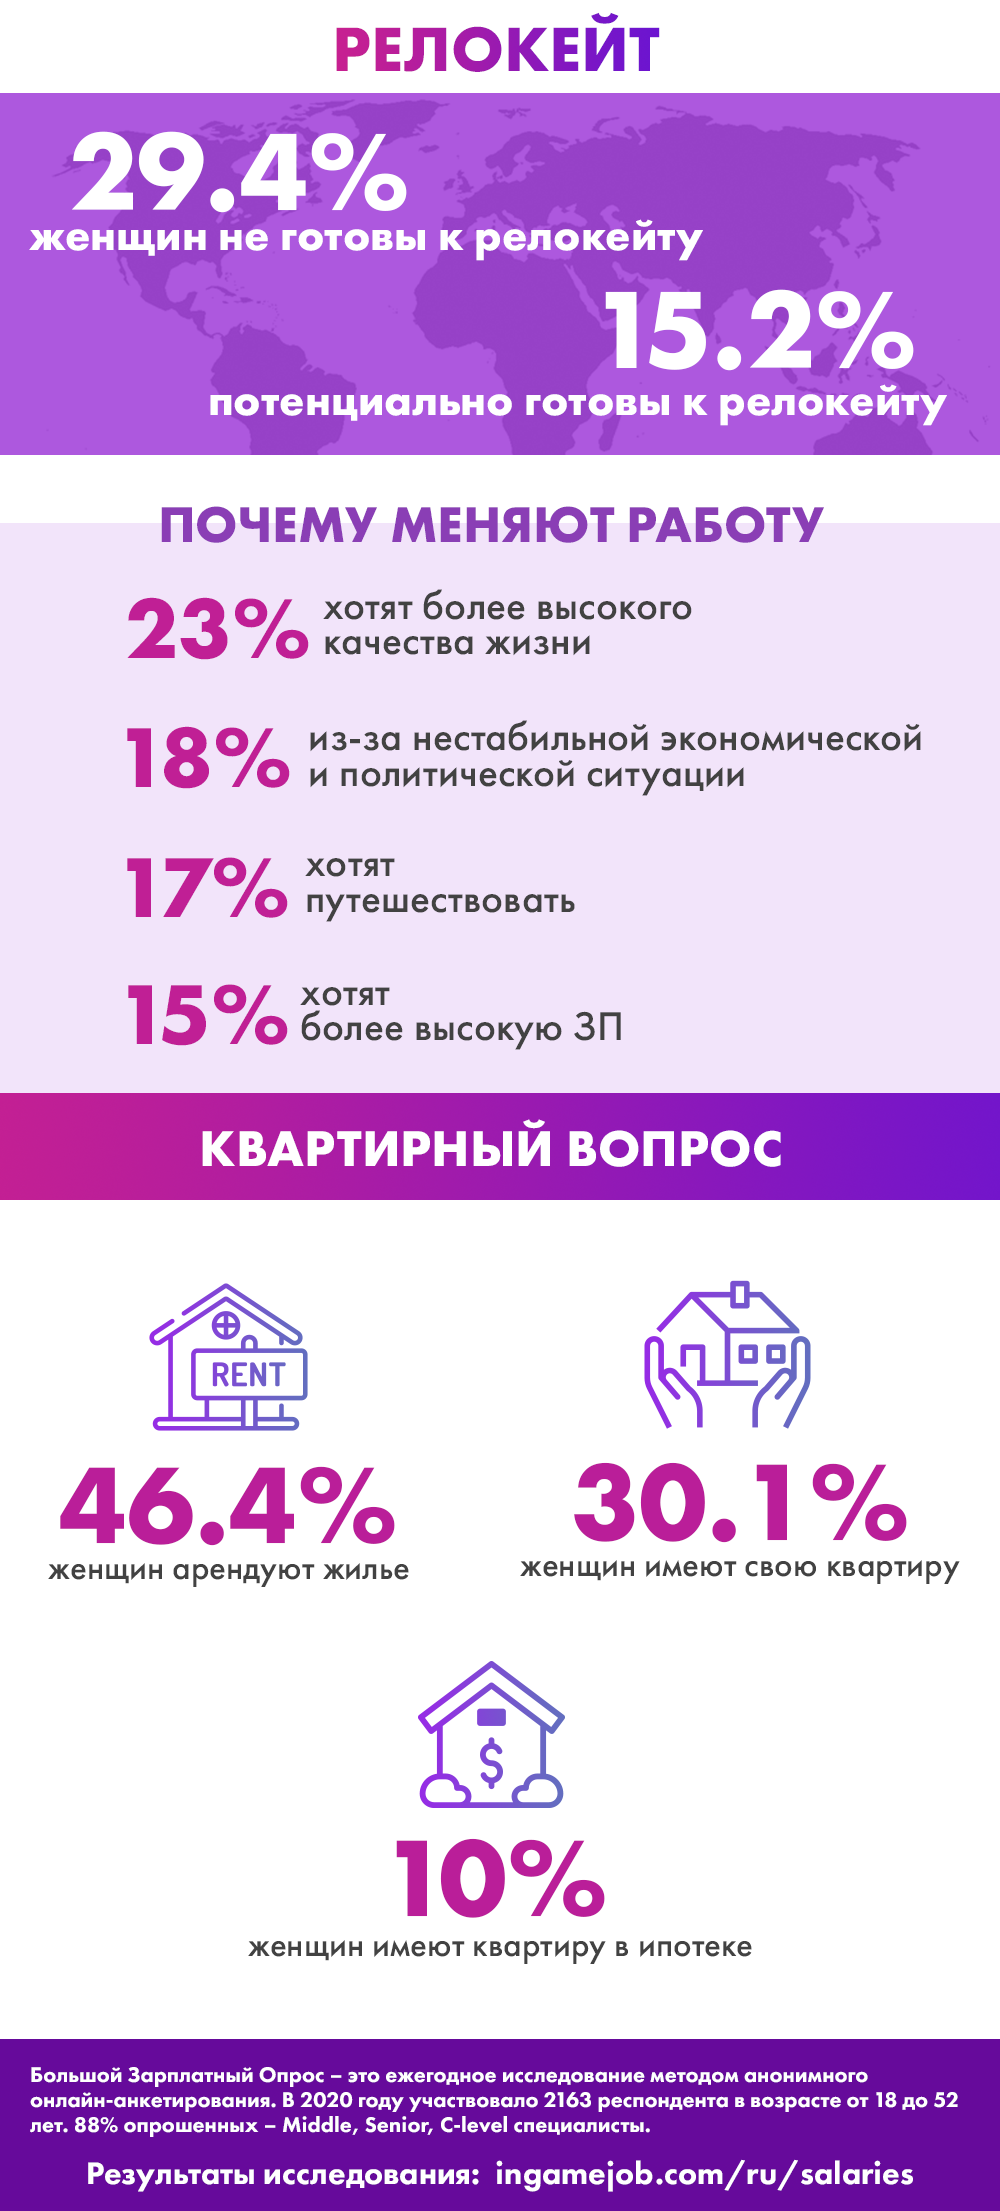 Инфографика: женщины в русскопонимающем геймдеве в 2020 году